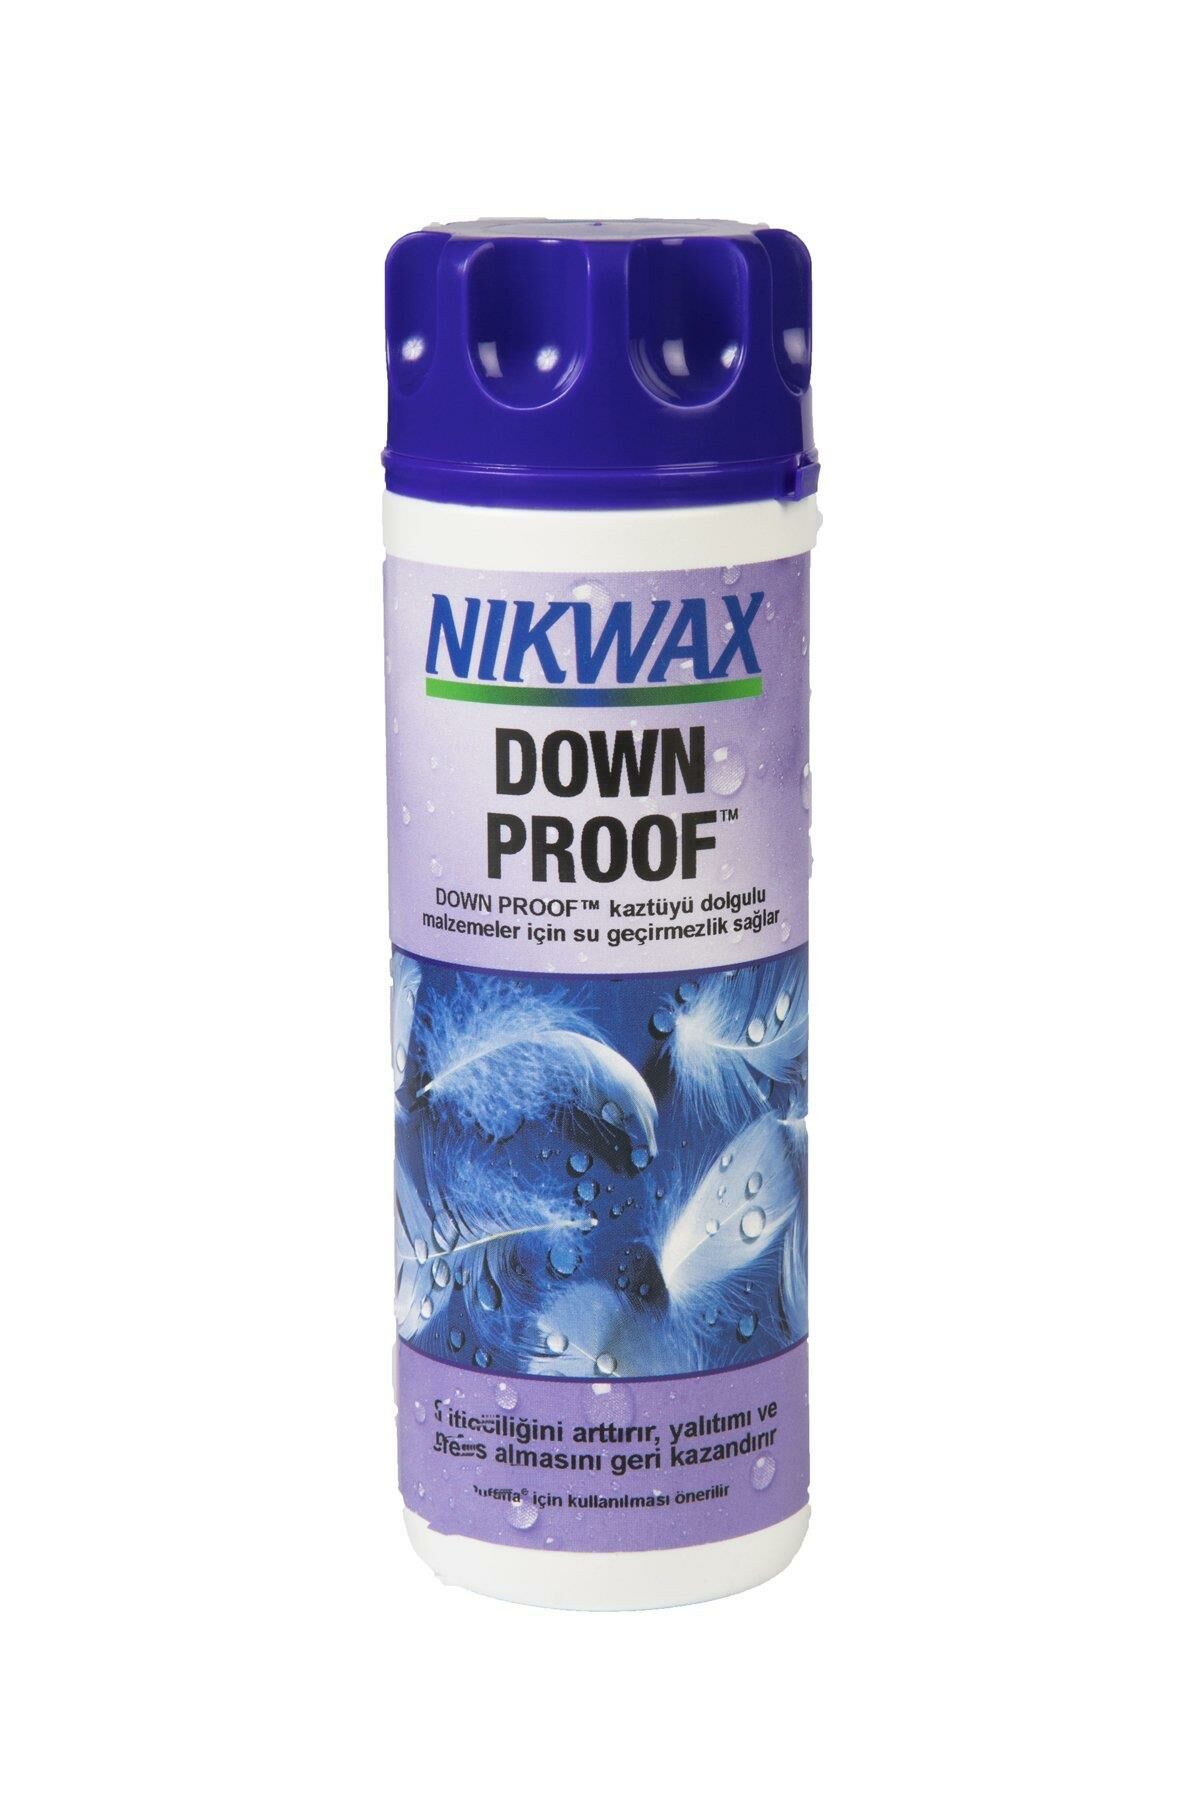 Nikwax Down Proof Kaz Tüyü İçin Su Geçirmezlik Yıkama Mor